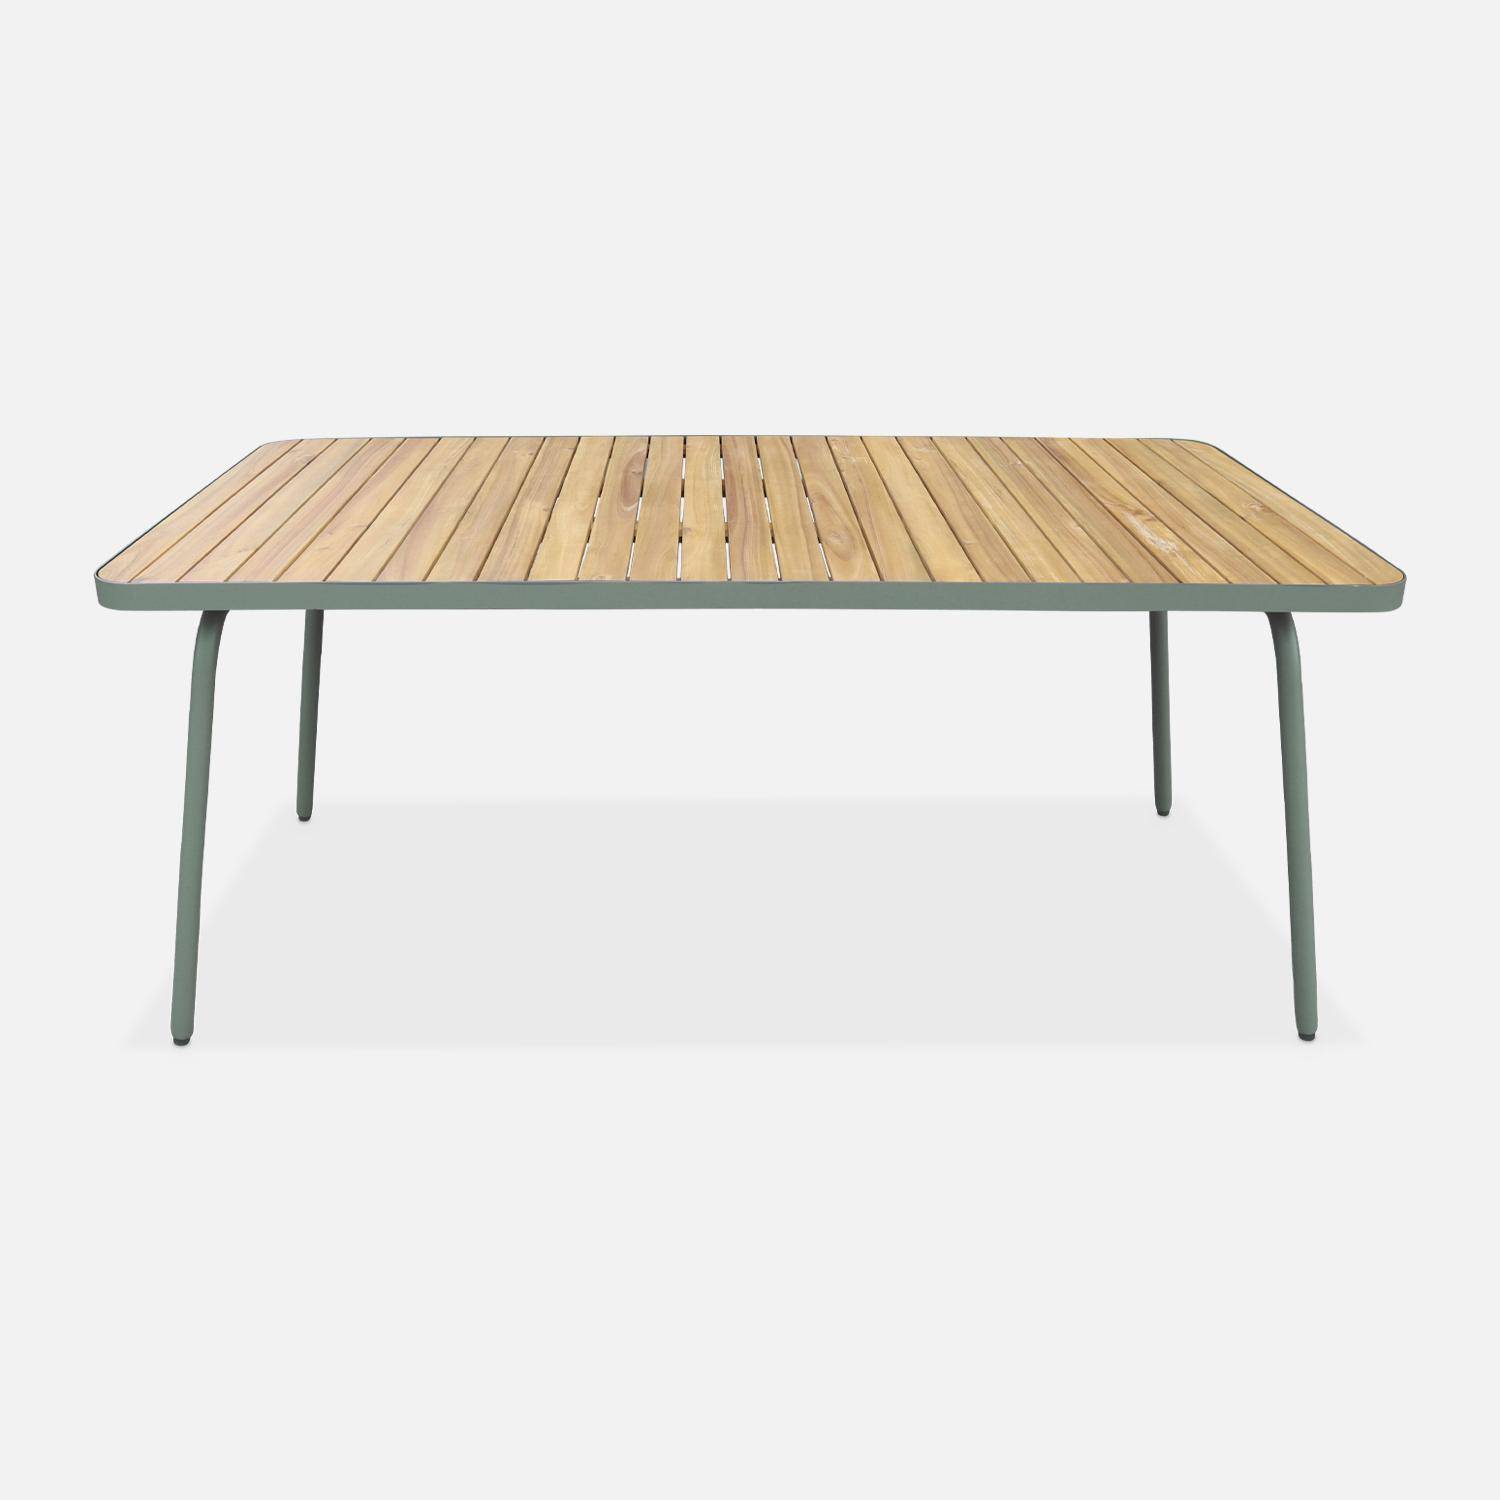 Gartentisch aus FSC-Akazienholz, salbeigrüner Stahl, klappbare Beine, 6 Plätze - Sanur Photo2